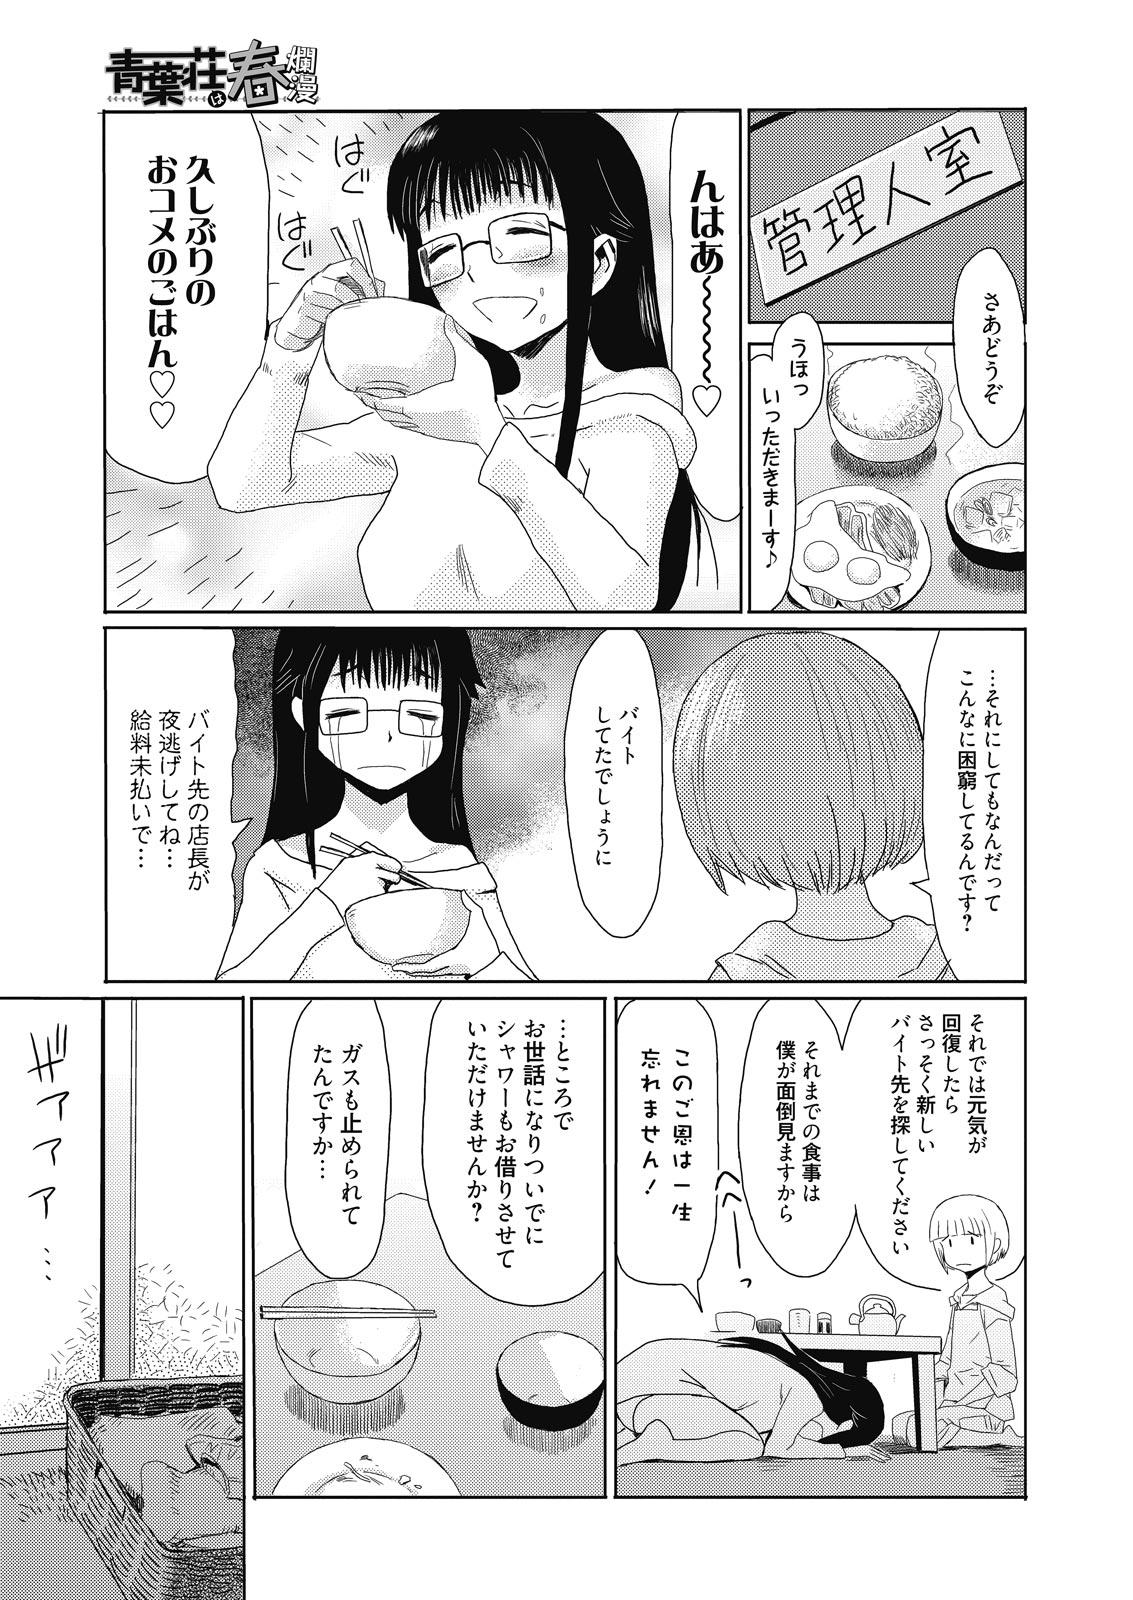 Gayfuck Web Manga Bangaichi Vol. 8 Ex Girlfriends - Page 5